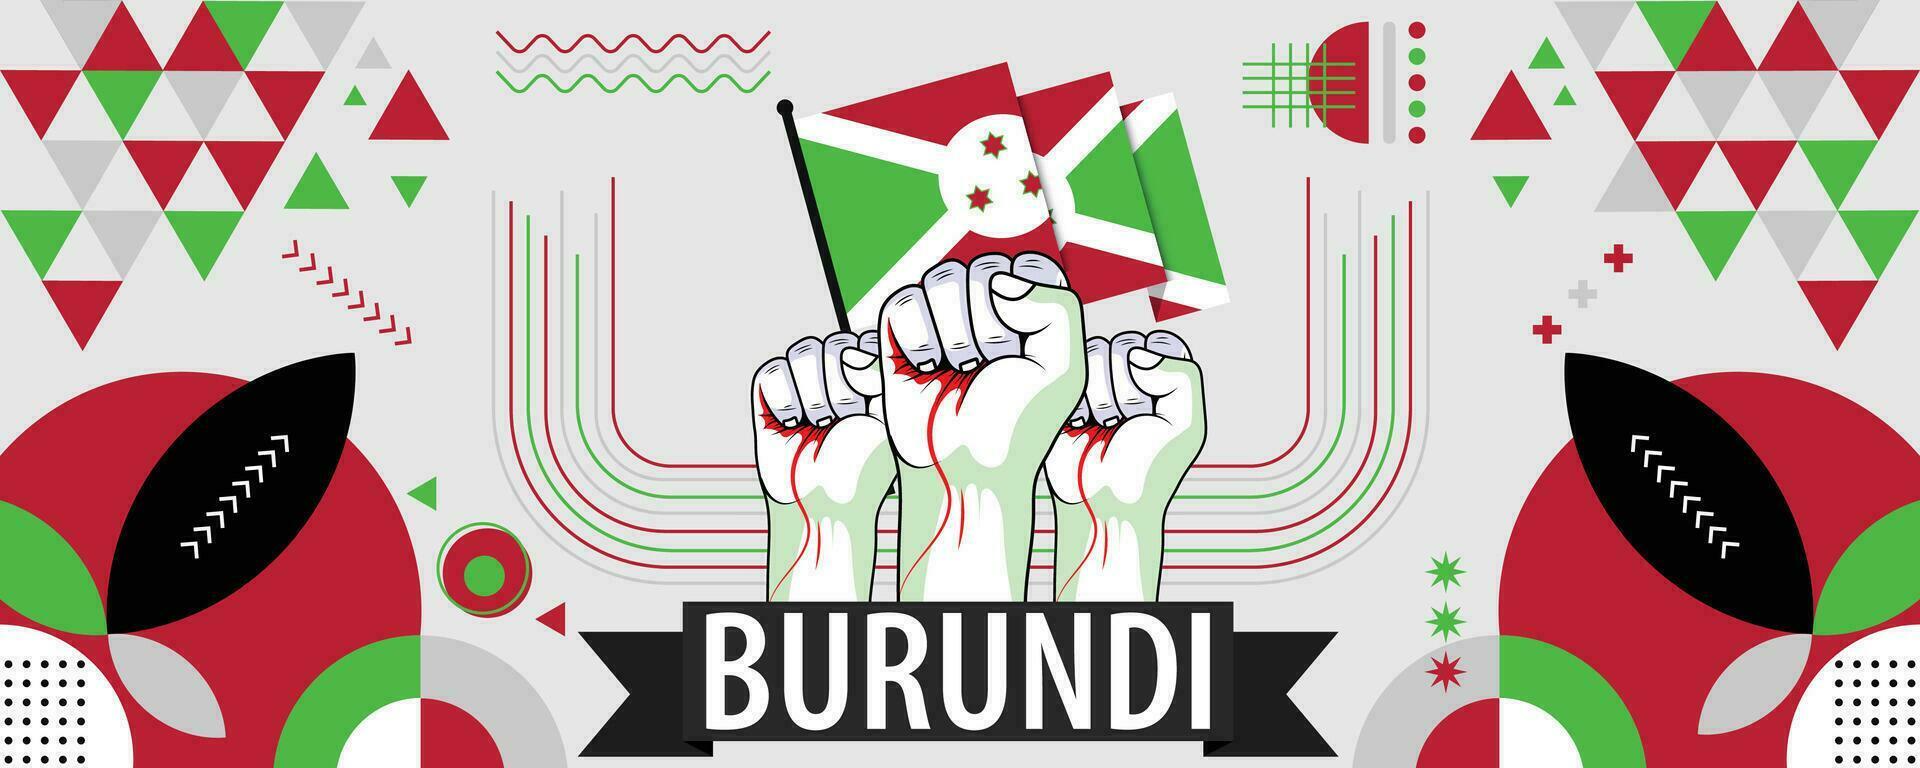 Burundi National oder Unabhängigkeit Tag Banner zum Land Feier. Flagge von Burundi mit angehoben Fäuste. modern retro Design mit Typorgaphie abstrakt geometrisch Symbole. Vektor Illustration.